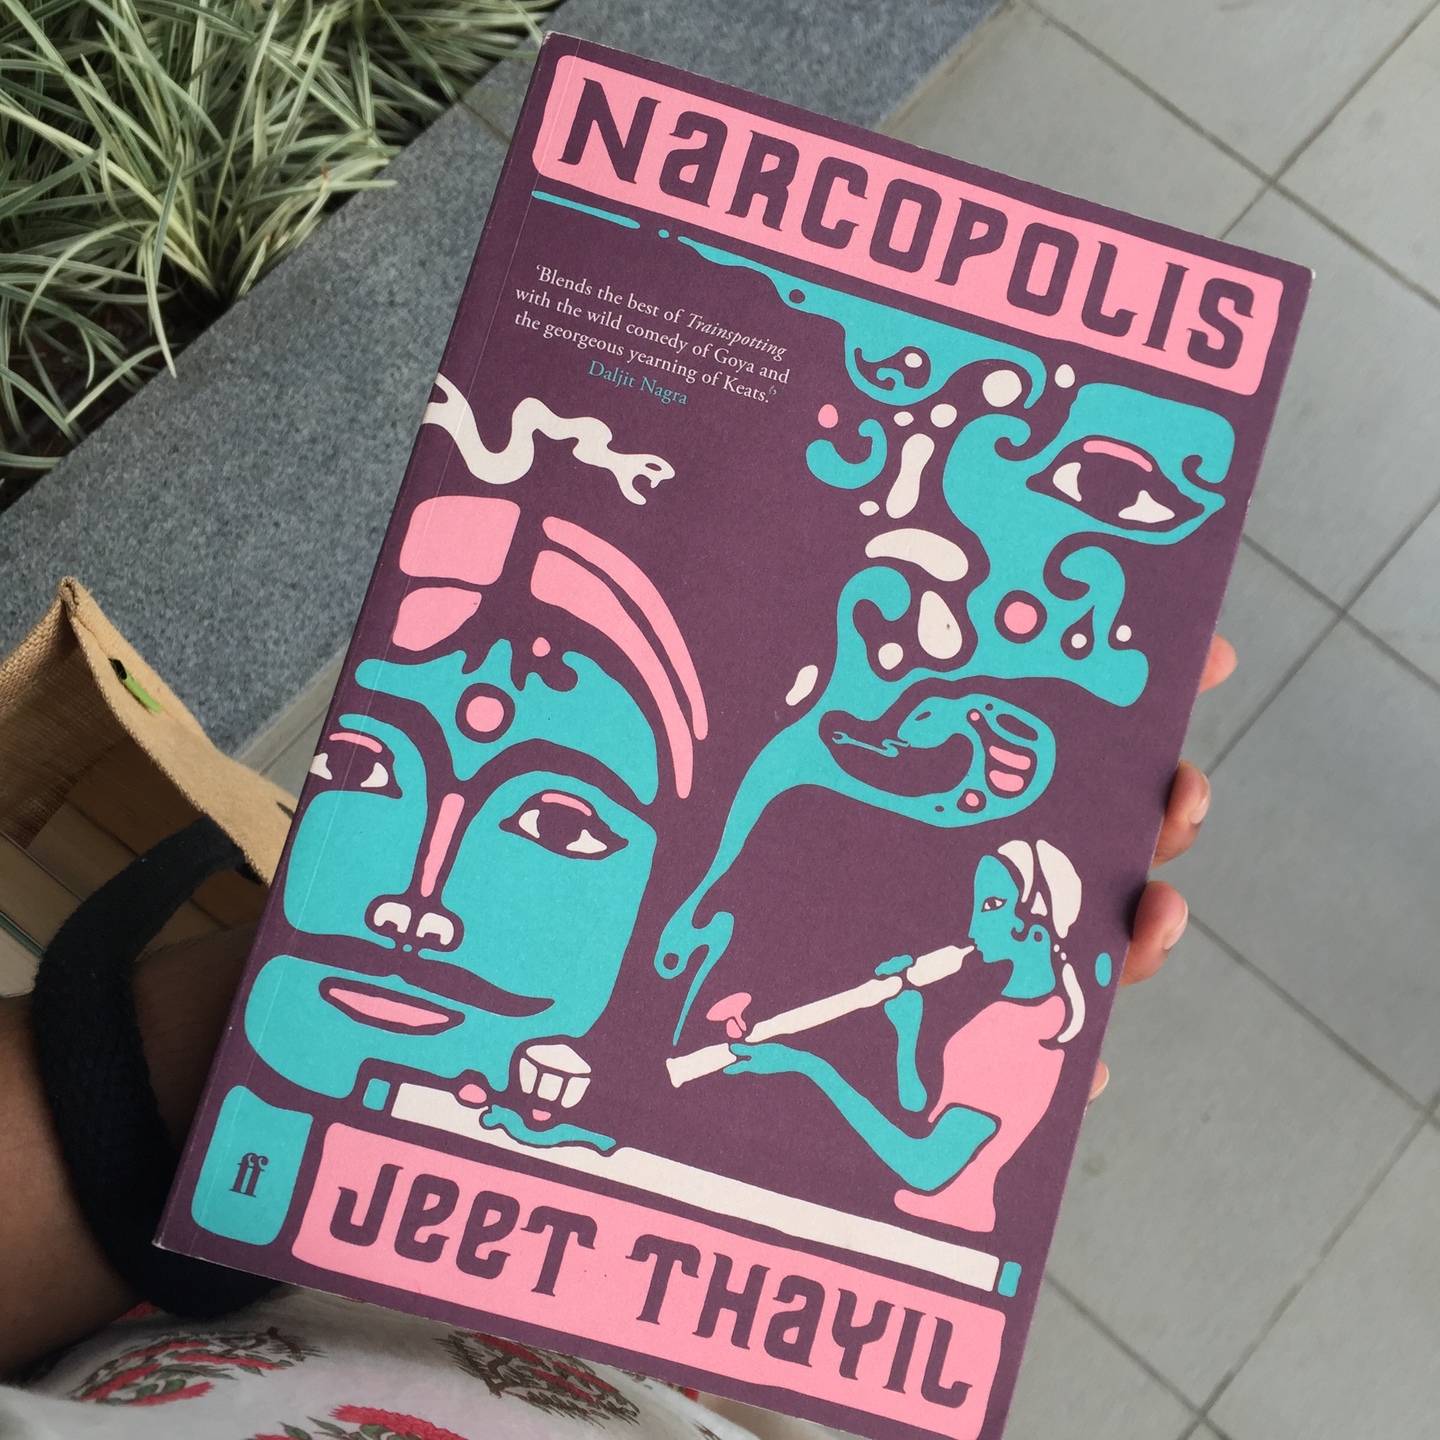 Narcopolis by Jeet Thayil [Paperback]